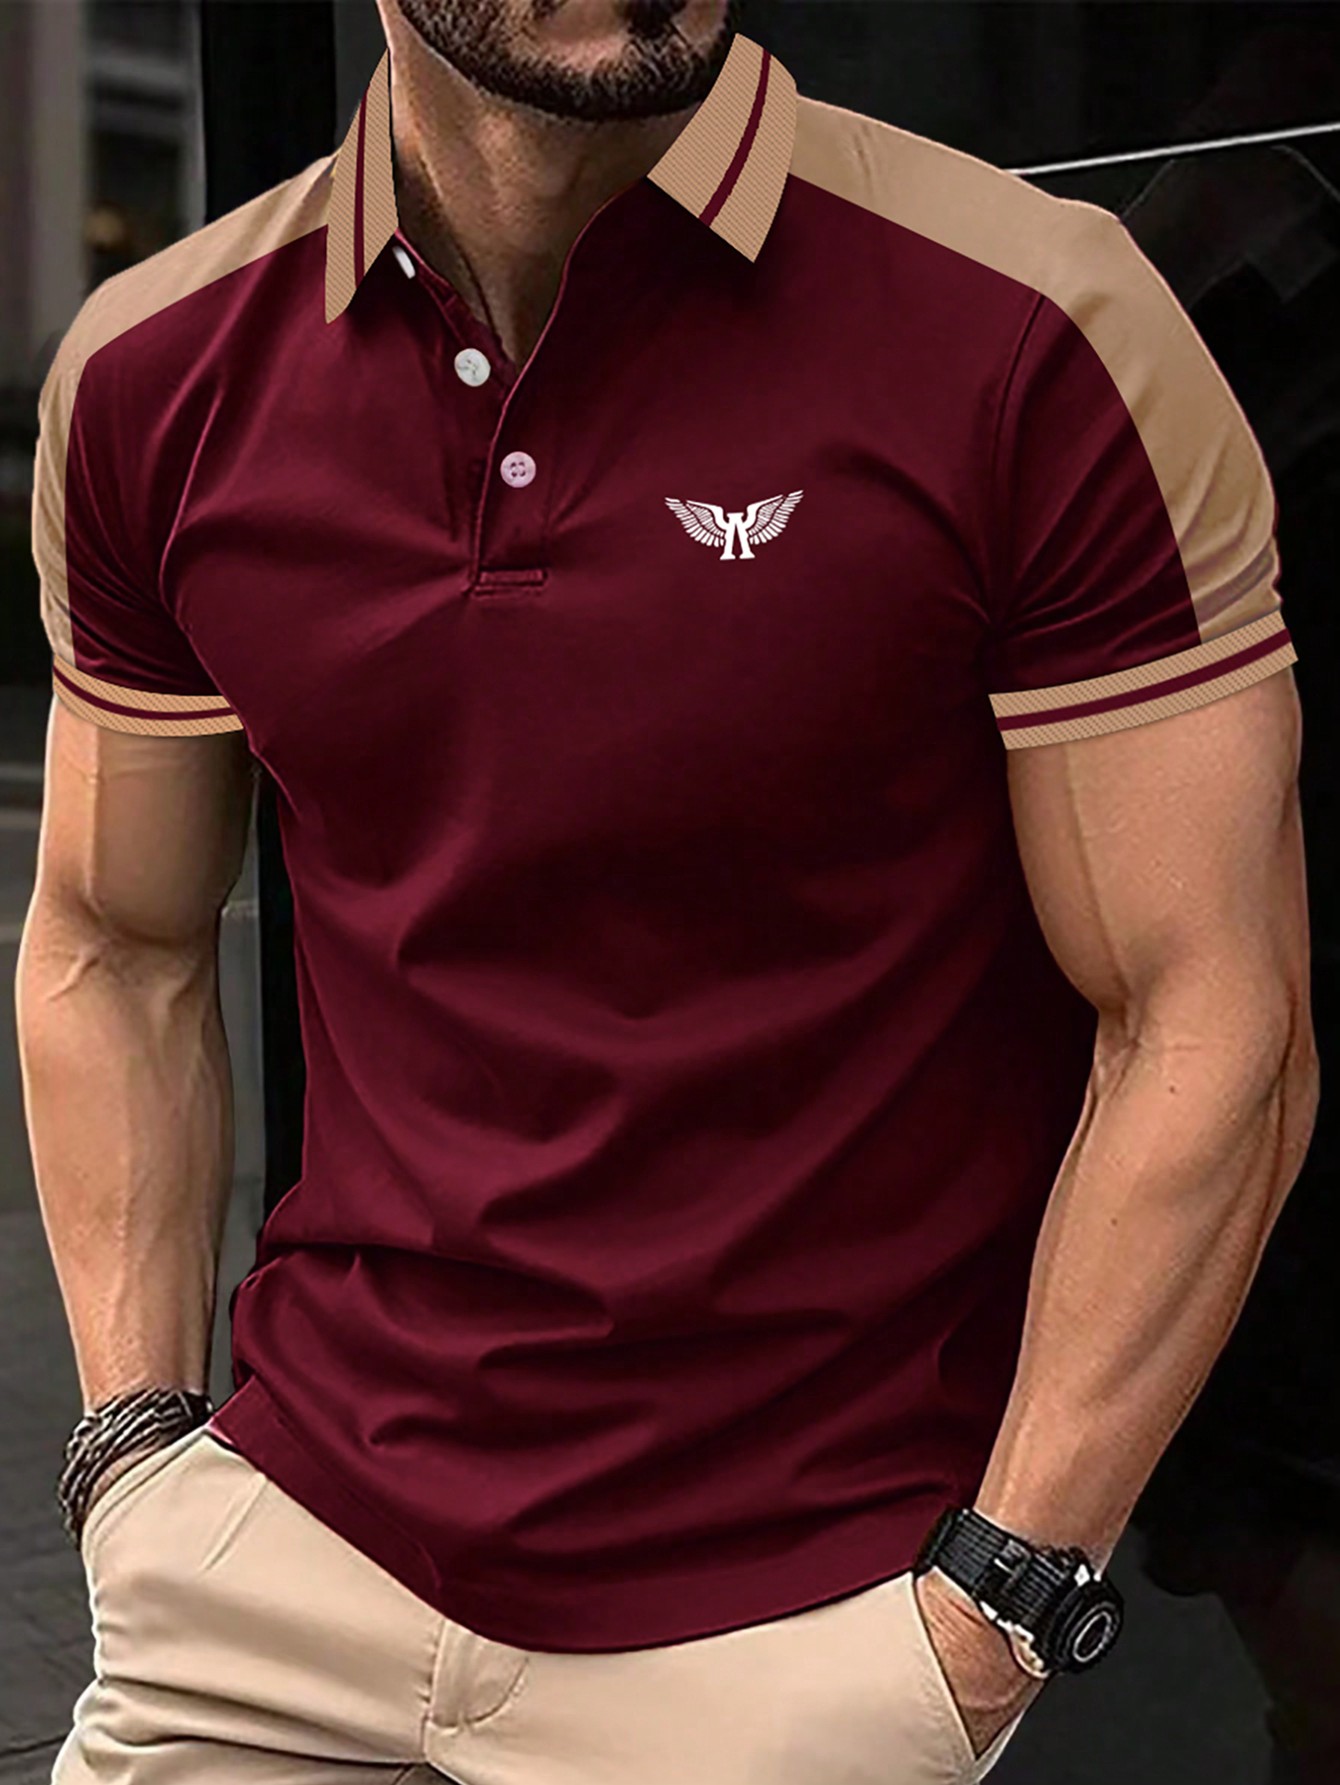 Мужская рубашка-поло с короткими рукавами и пуговицами на пуговицах Manfinity Homme контрастного цвета, бургундия